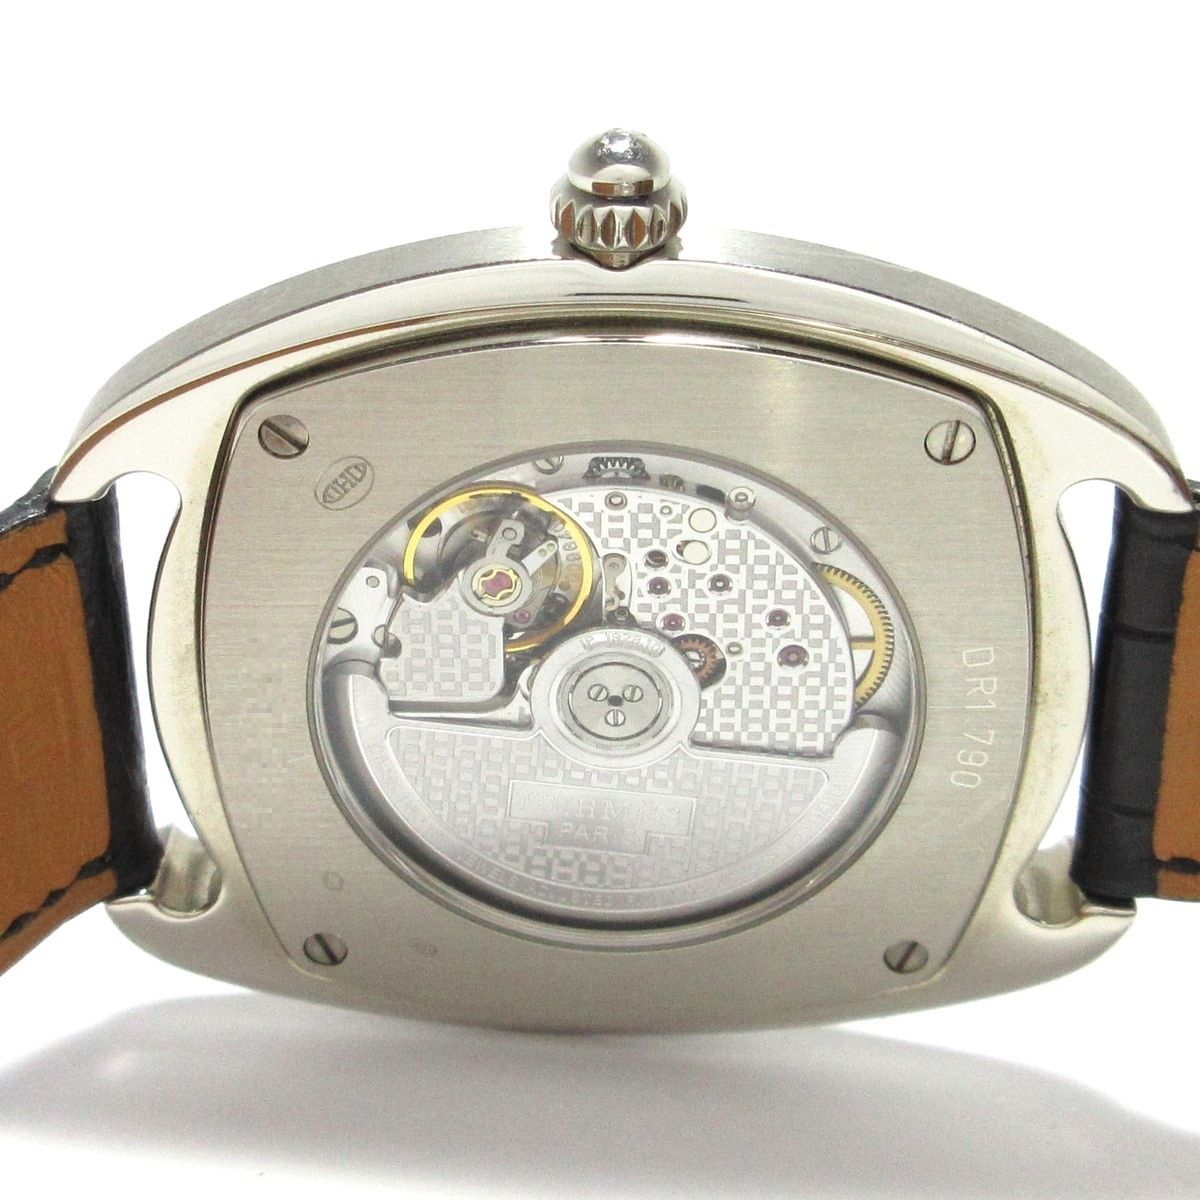 HERMES(エルメス) 腕時計 ドレサージュ DR1.790 メンズ K18WG×クロコ 